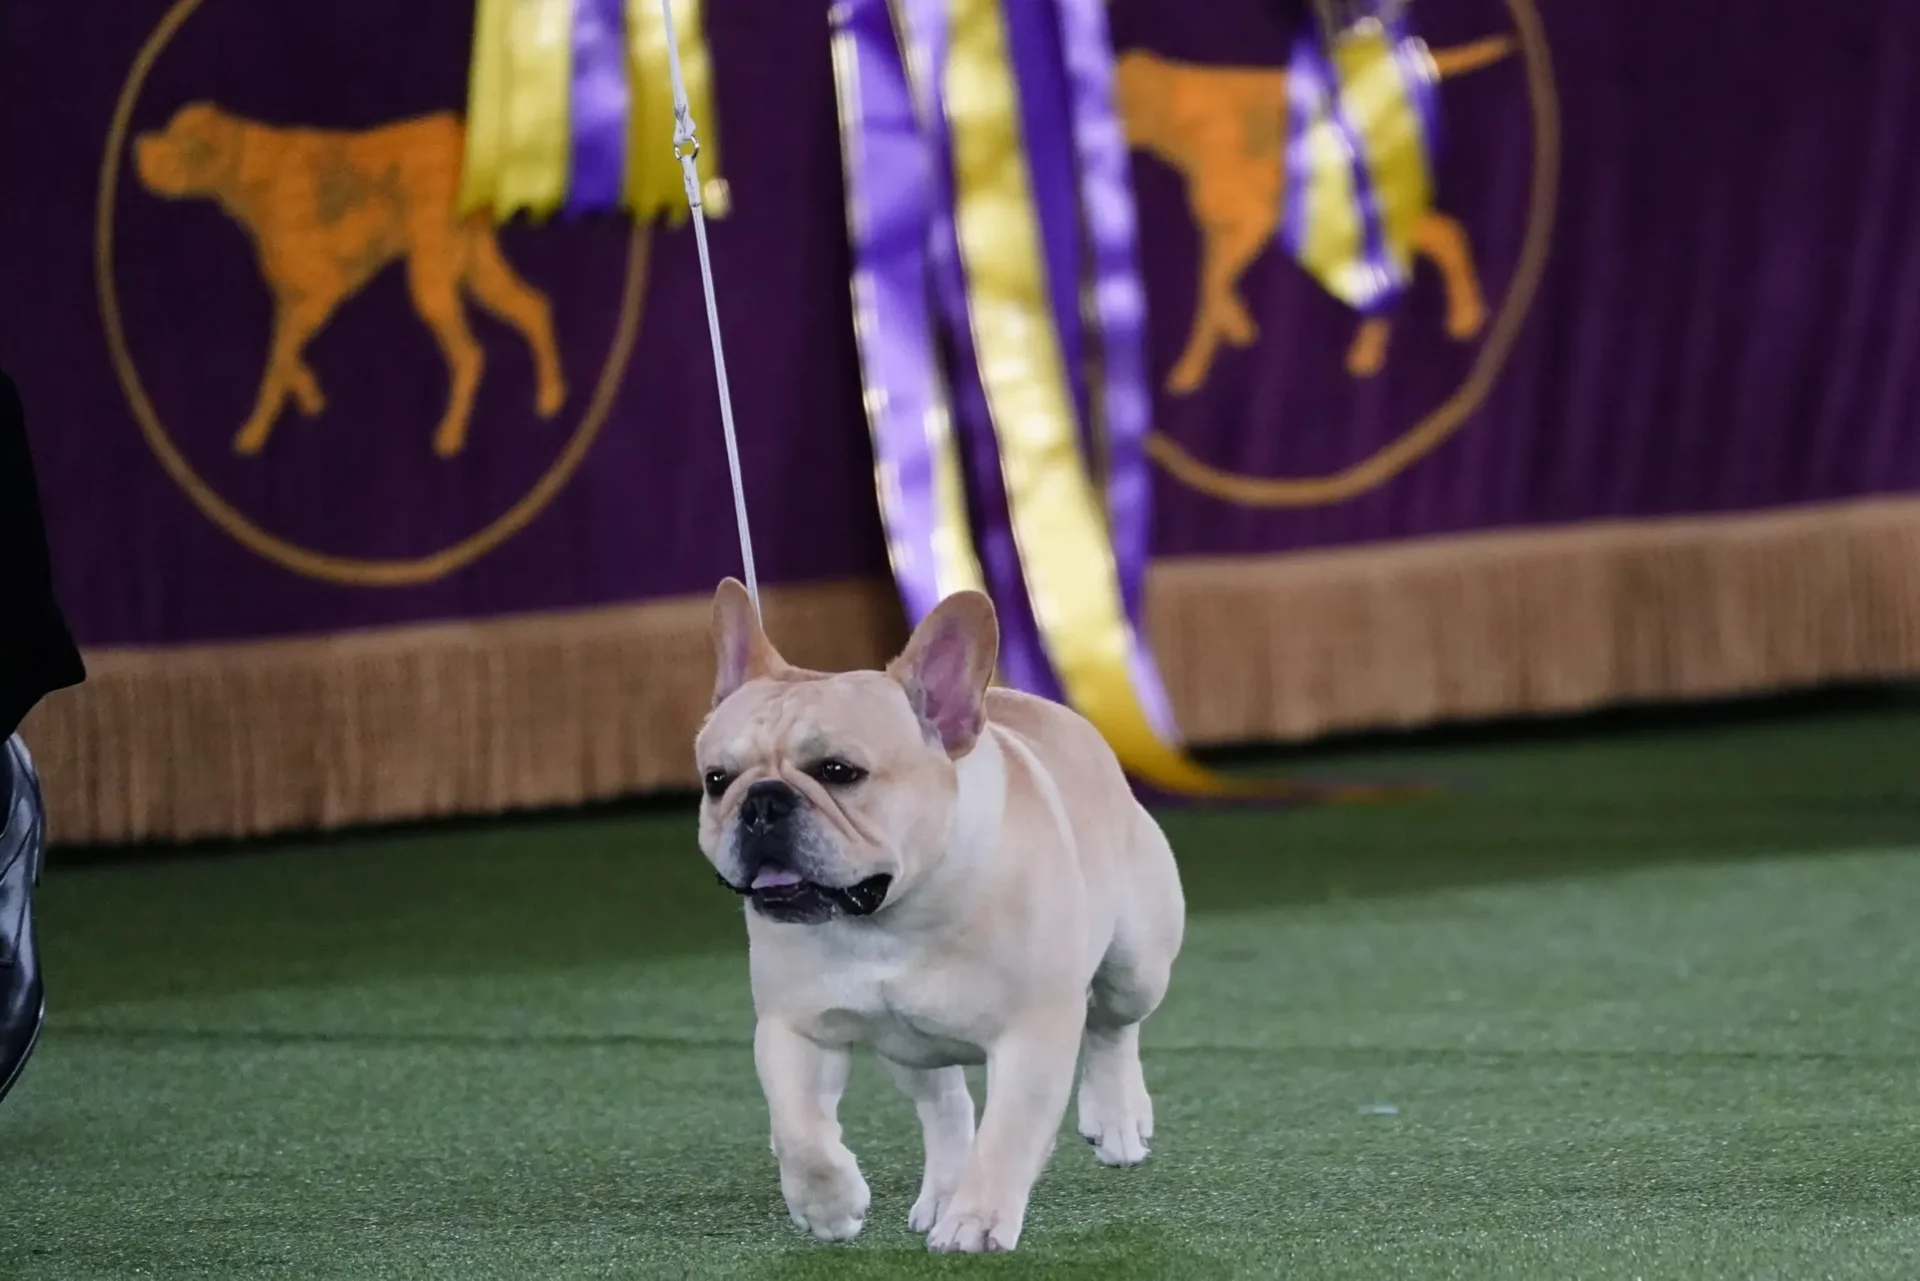 El Frenchie se convierte en un favorito, y en un competidor de exposición canina.